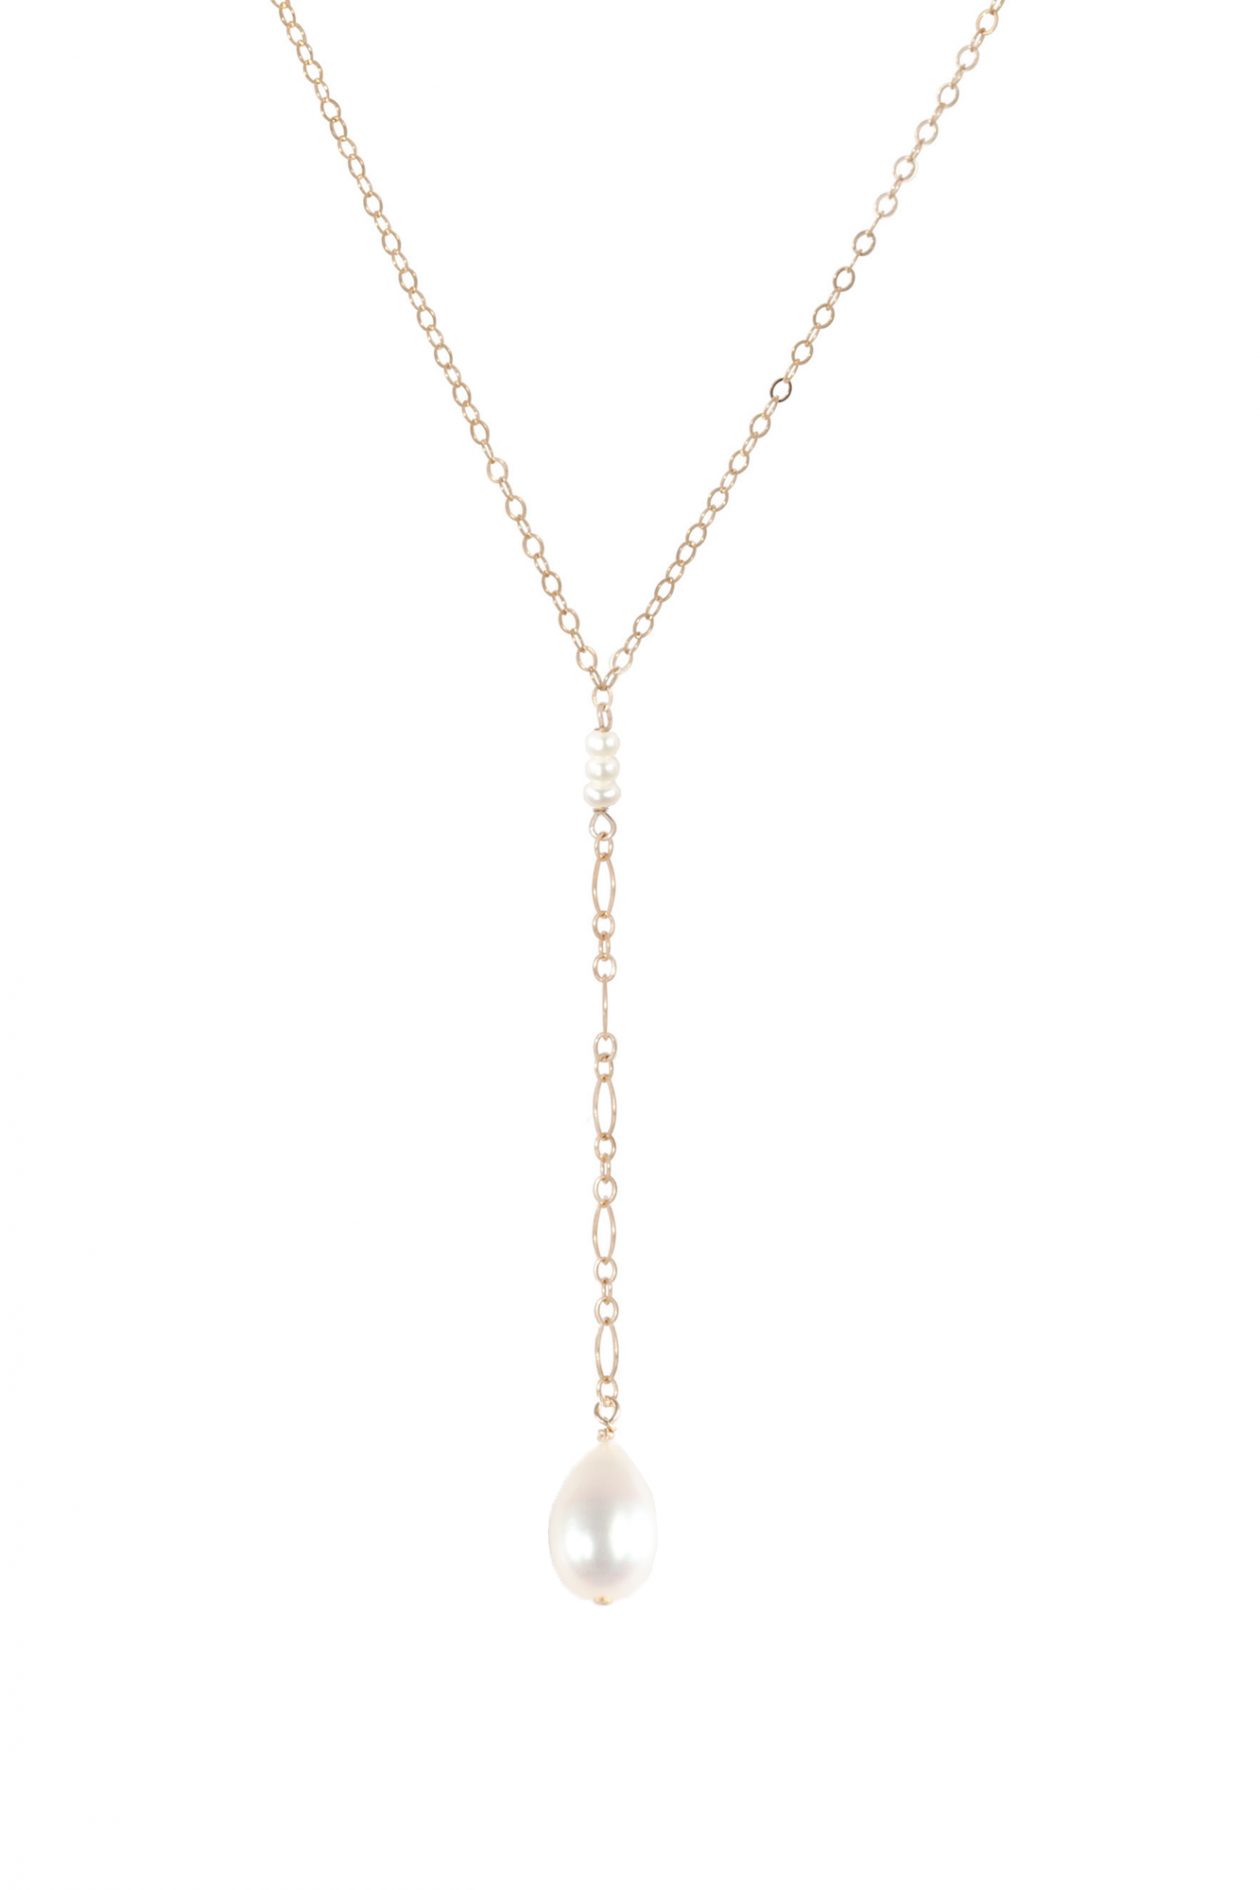 JK Designs "Y" Drop Necklace in Pearl